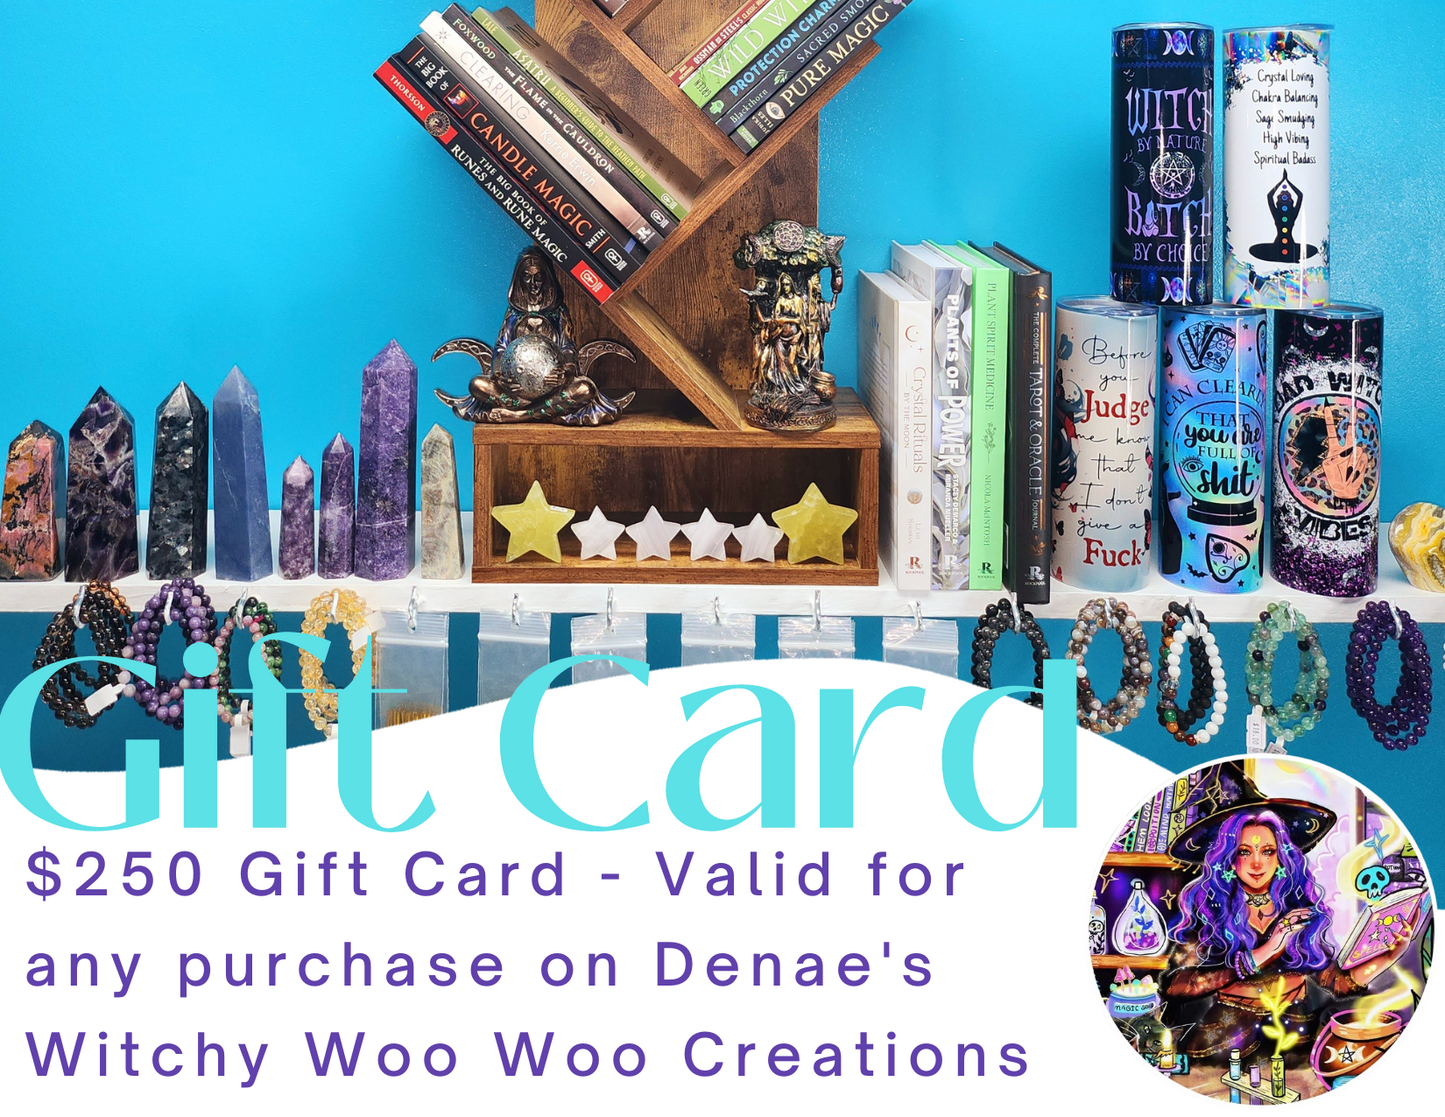 The Woo Woo Gift Card